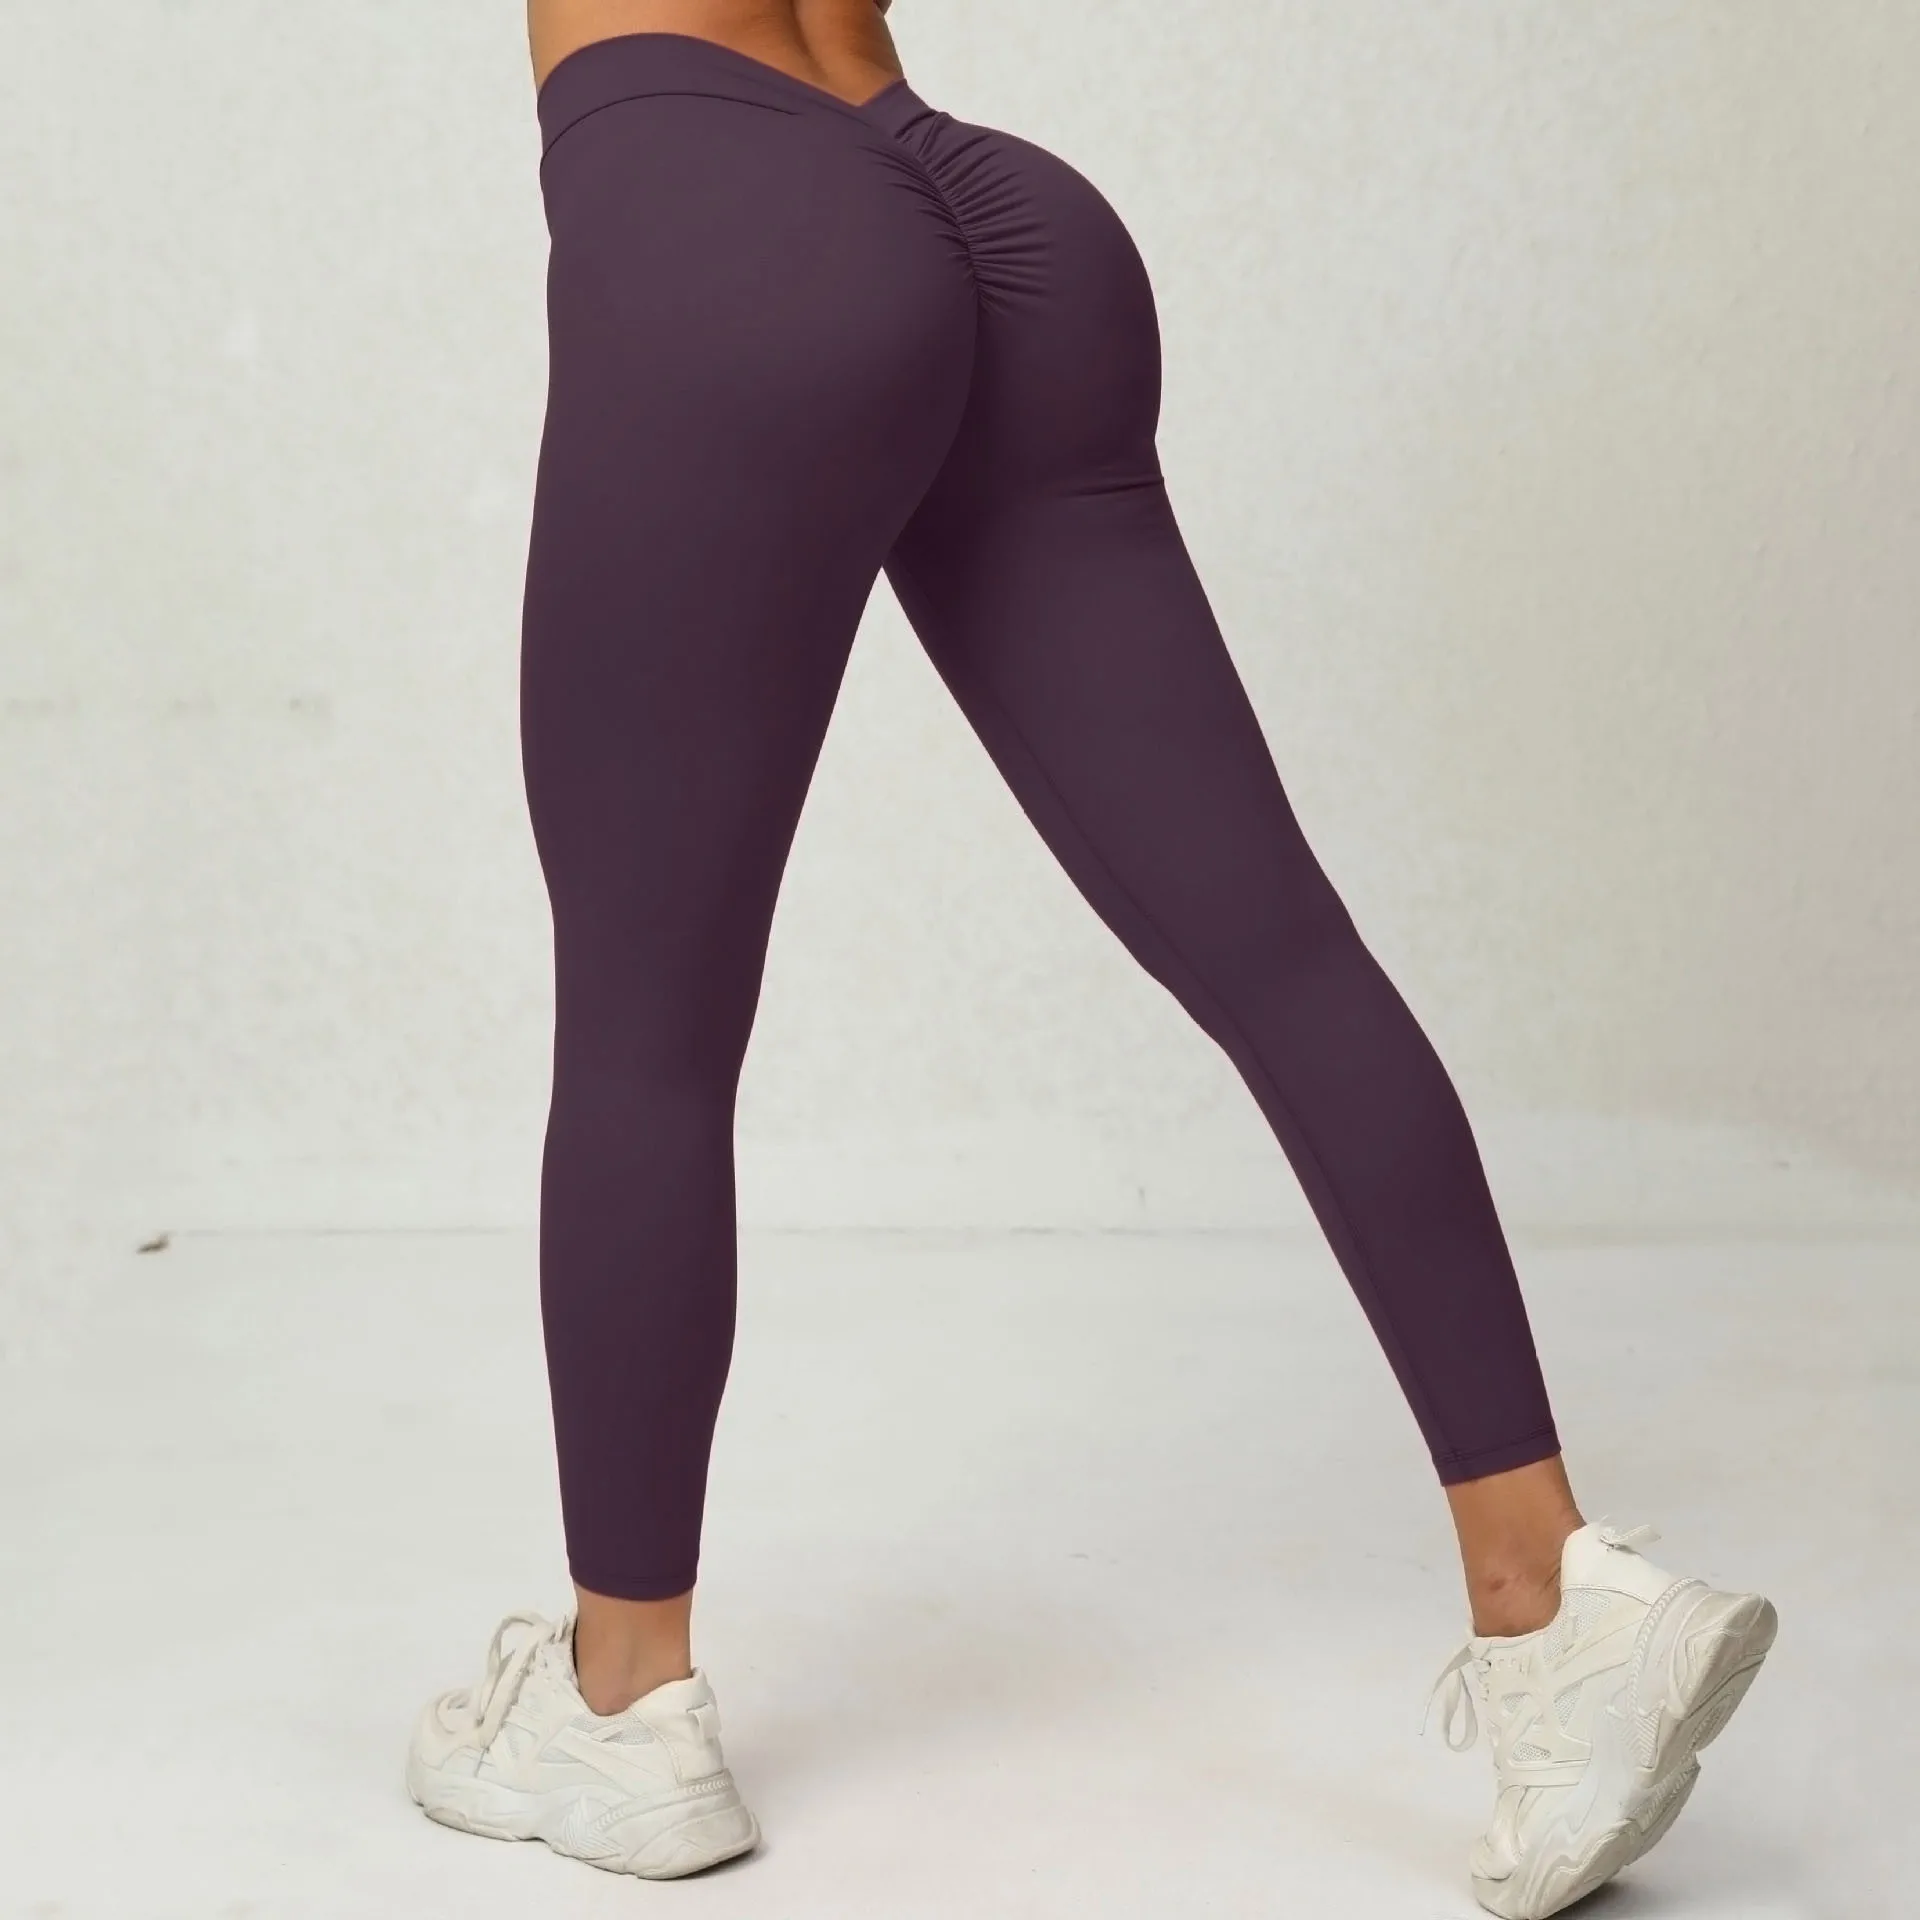 Aola Wholesale Scrunch Butt Leggings No Camel Toe V Back Yoga Pants ...